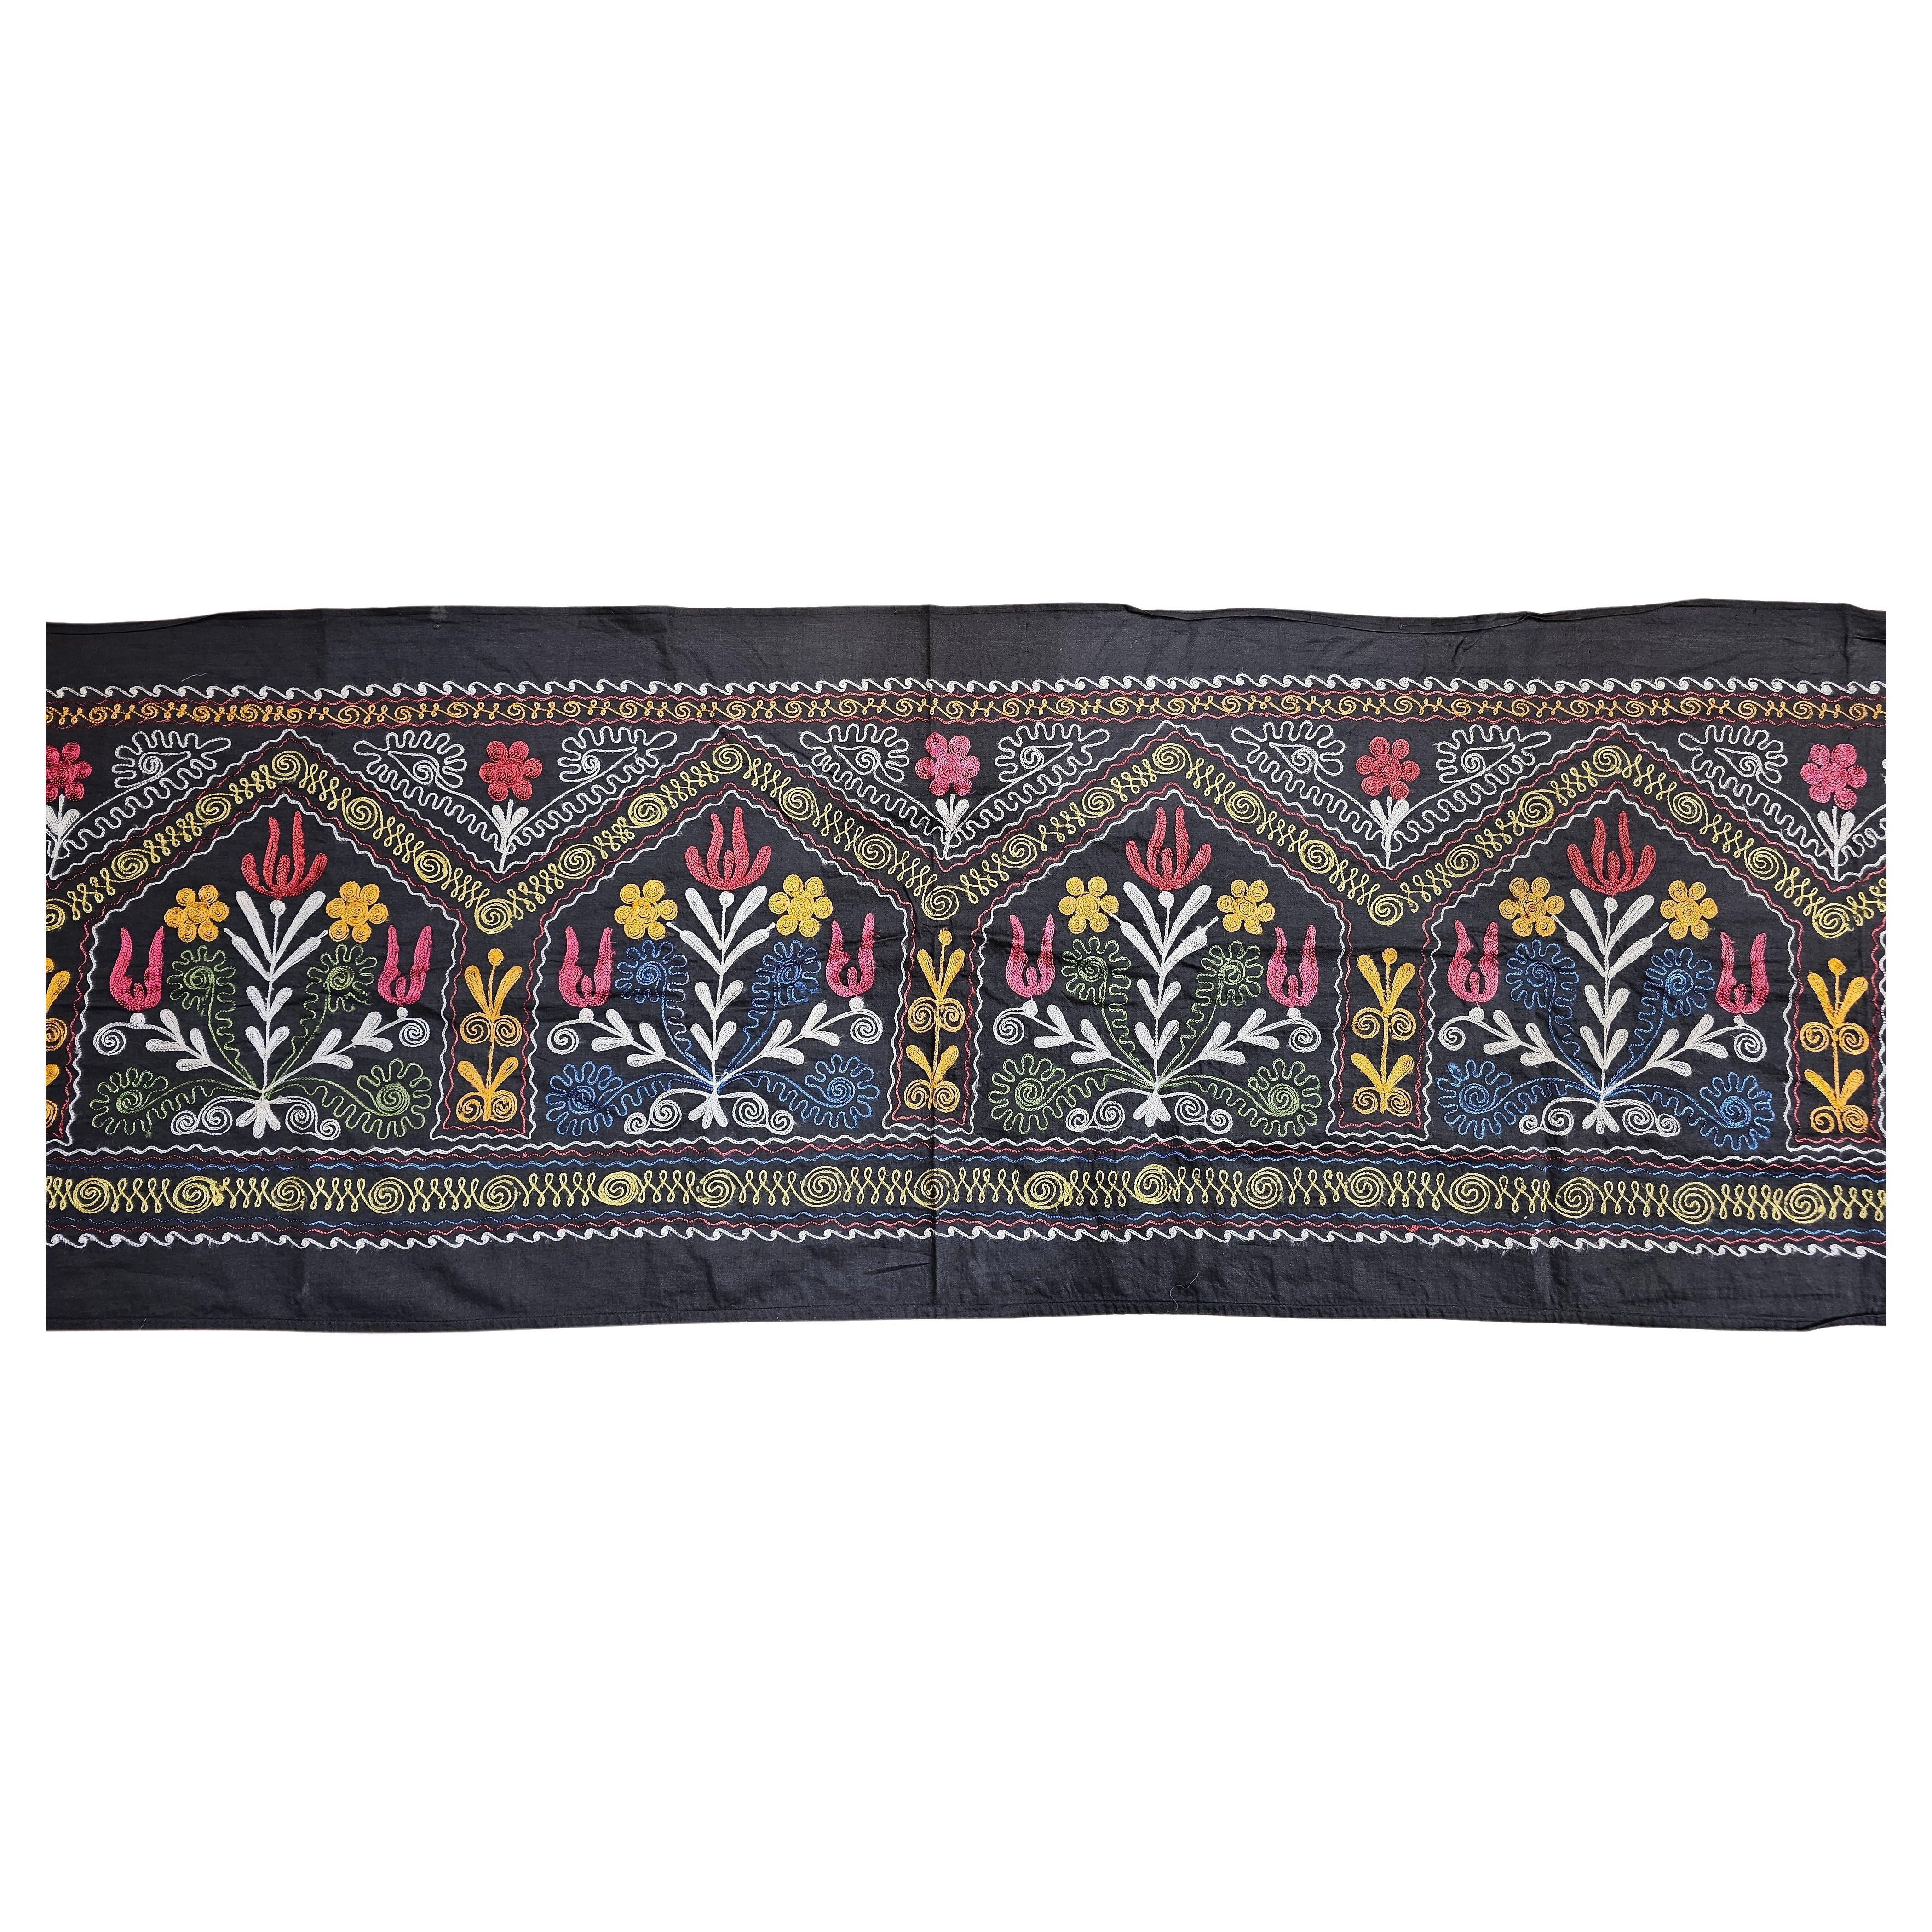 Handgefertigte Vintage-Susani-Seidenstickerei aus Usbekistan in Zentralasien mit schwarzem Baumwollgrund und Seidenmustern in Schwarz, Blau, Grün, Elfenbein, Gelb und Rot.  Das Design jedes Paneels besteht aus fein seidengestickten Blumenmustern in